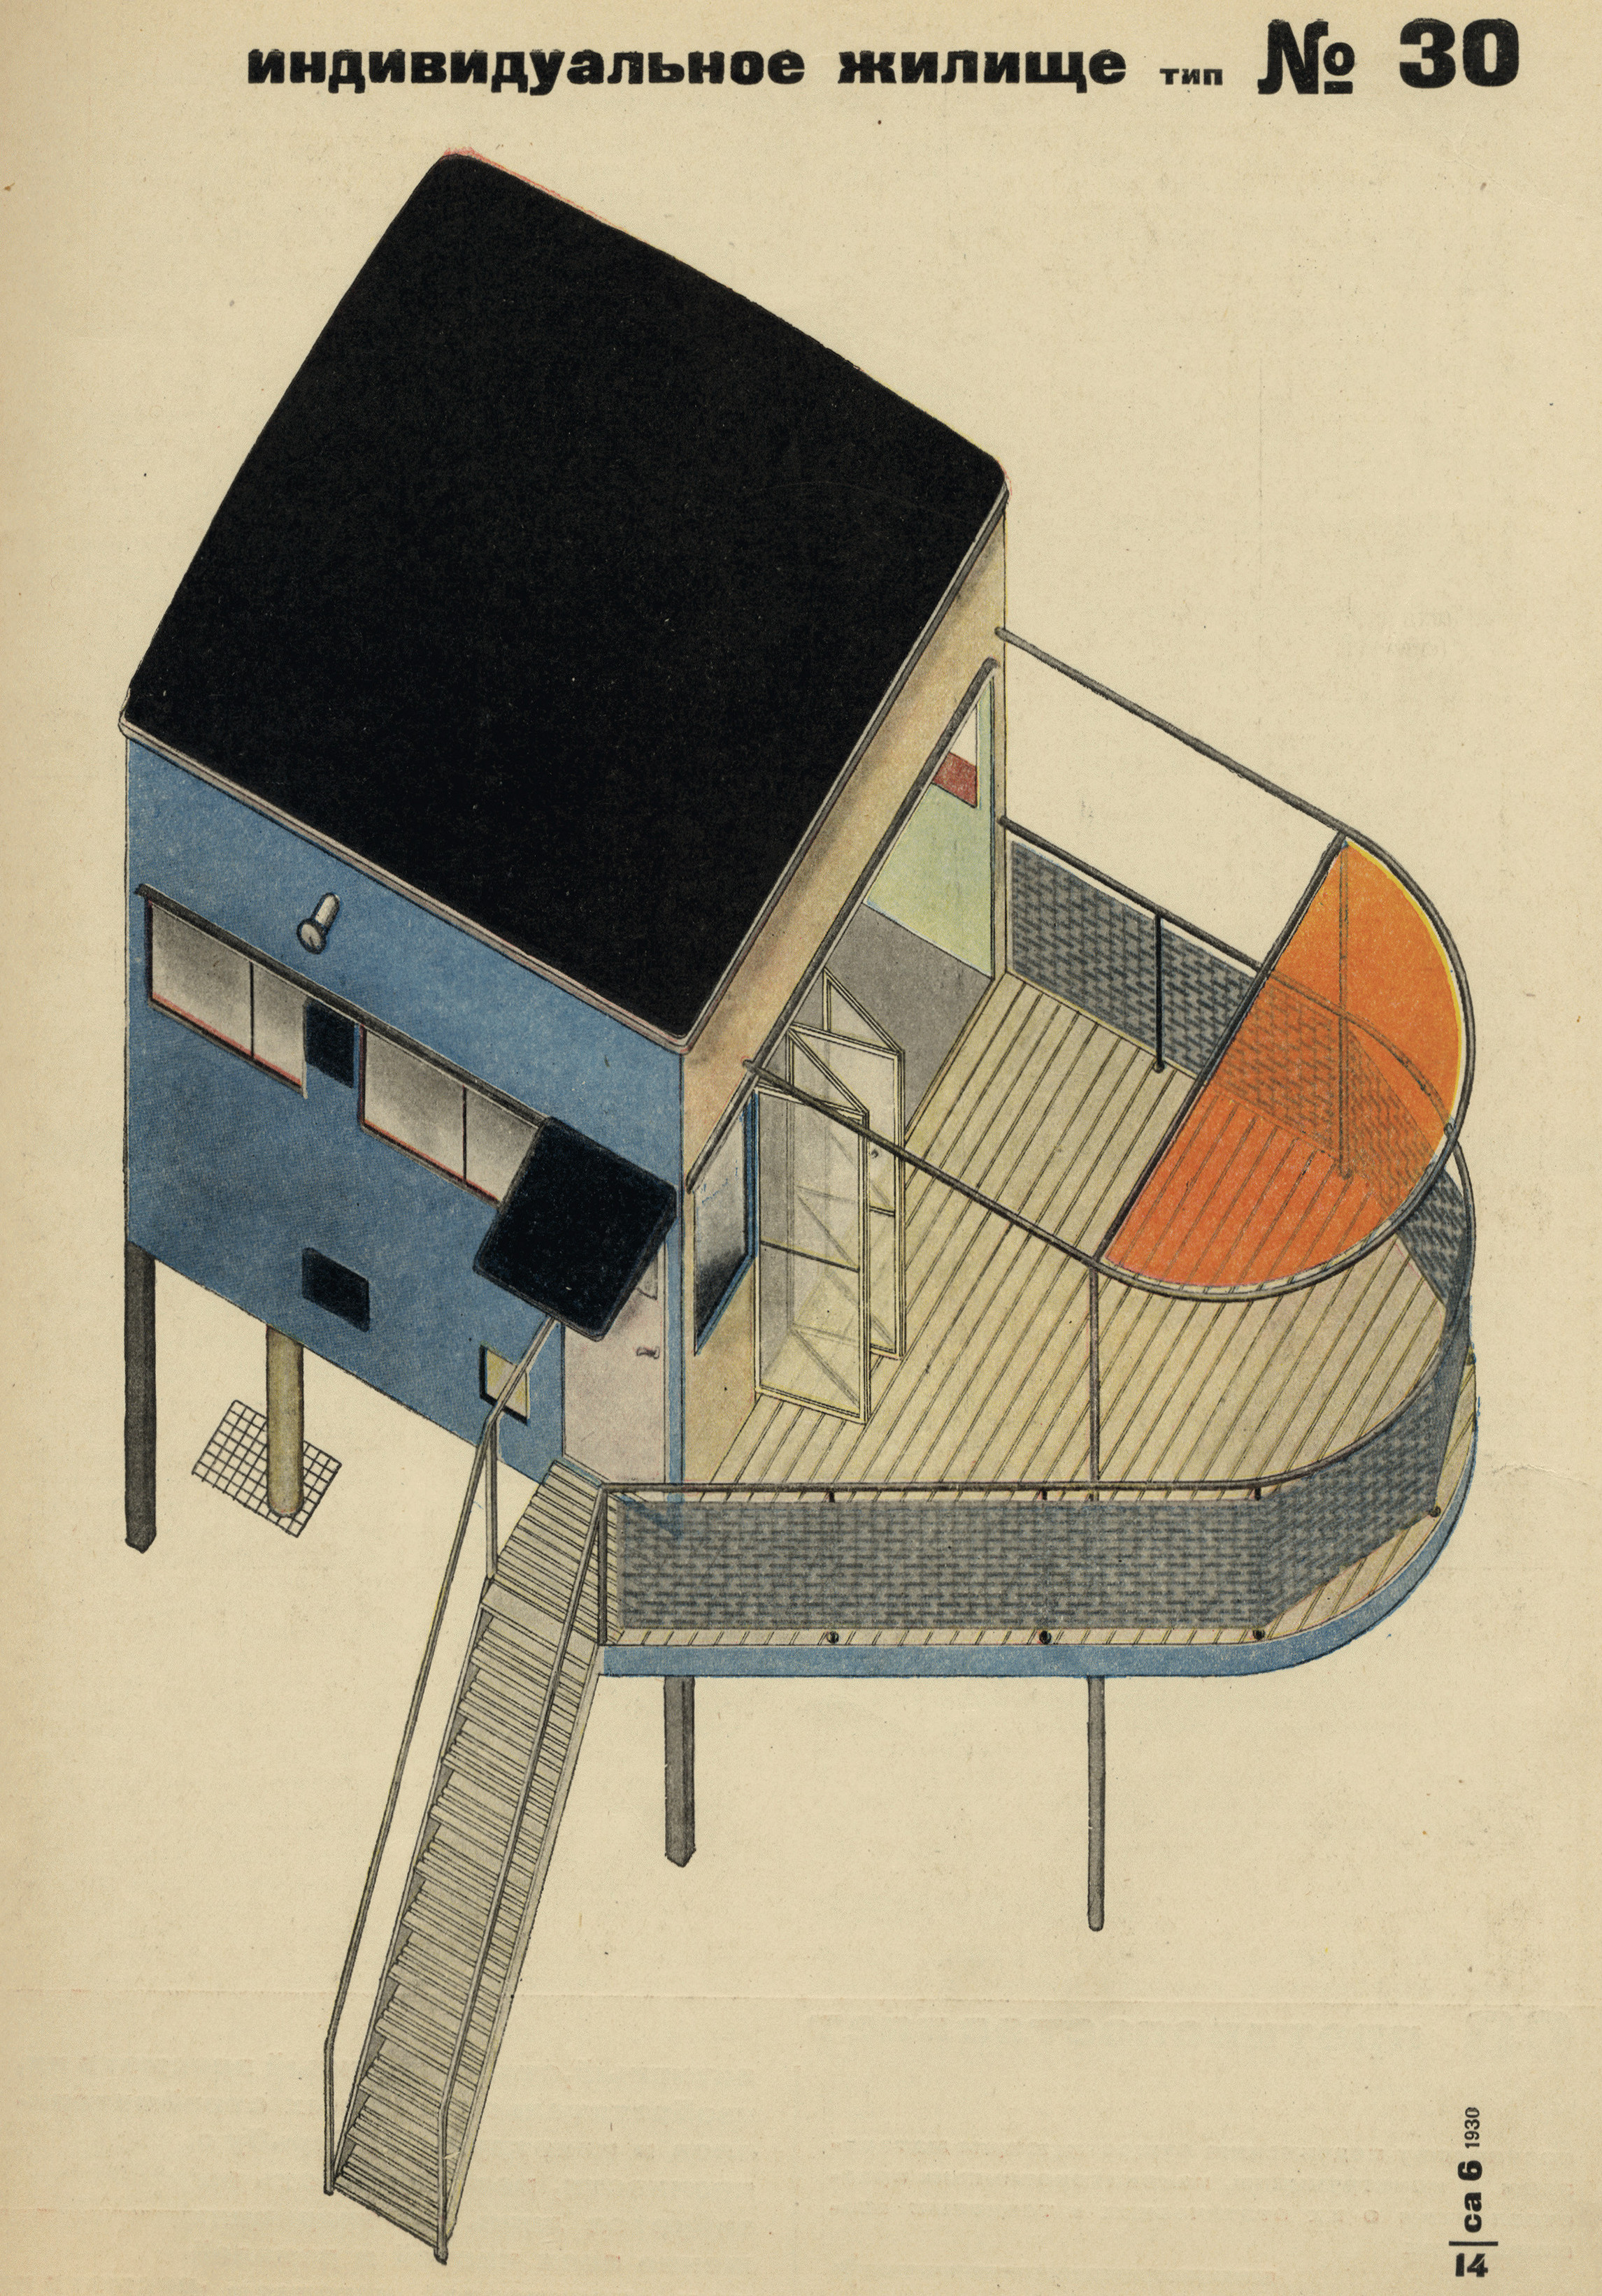 Индивидуальное жилище. Тип № 30. Из журнала «Современная архитектура», 1930, № 6